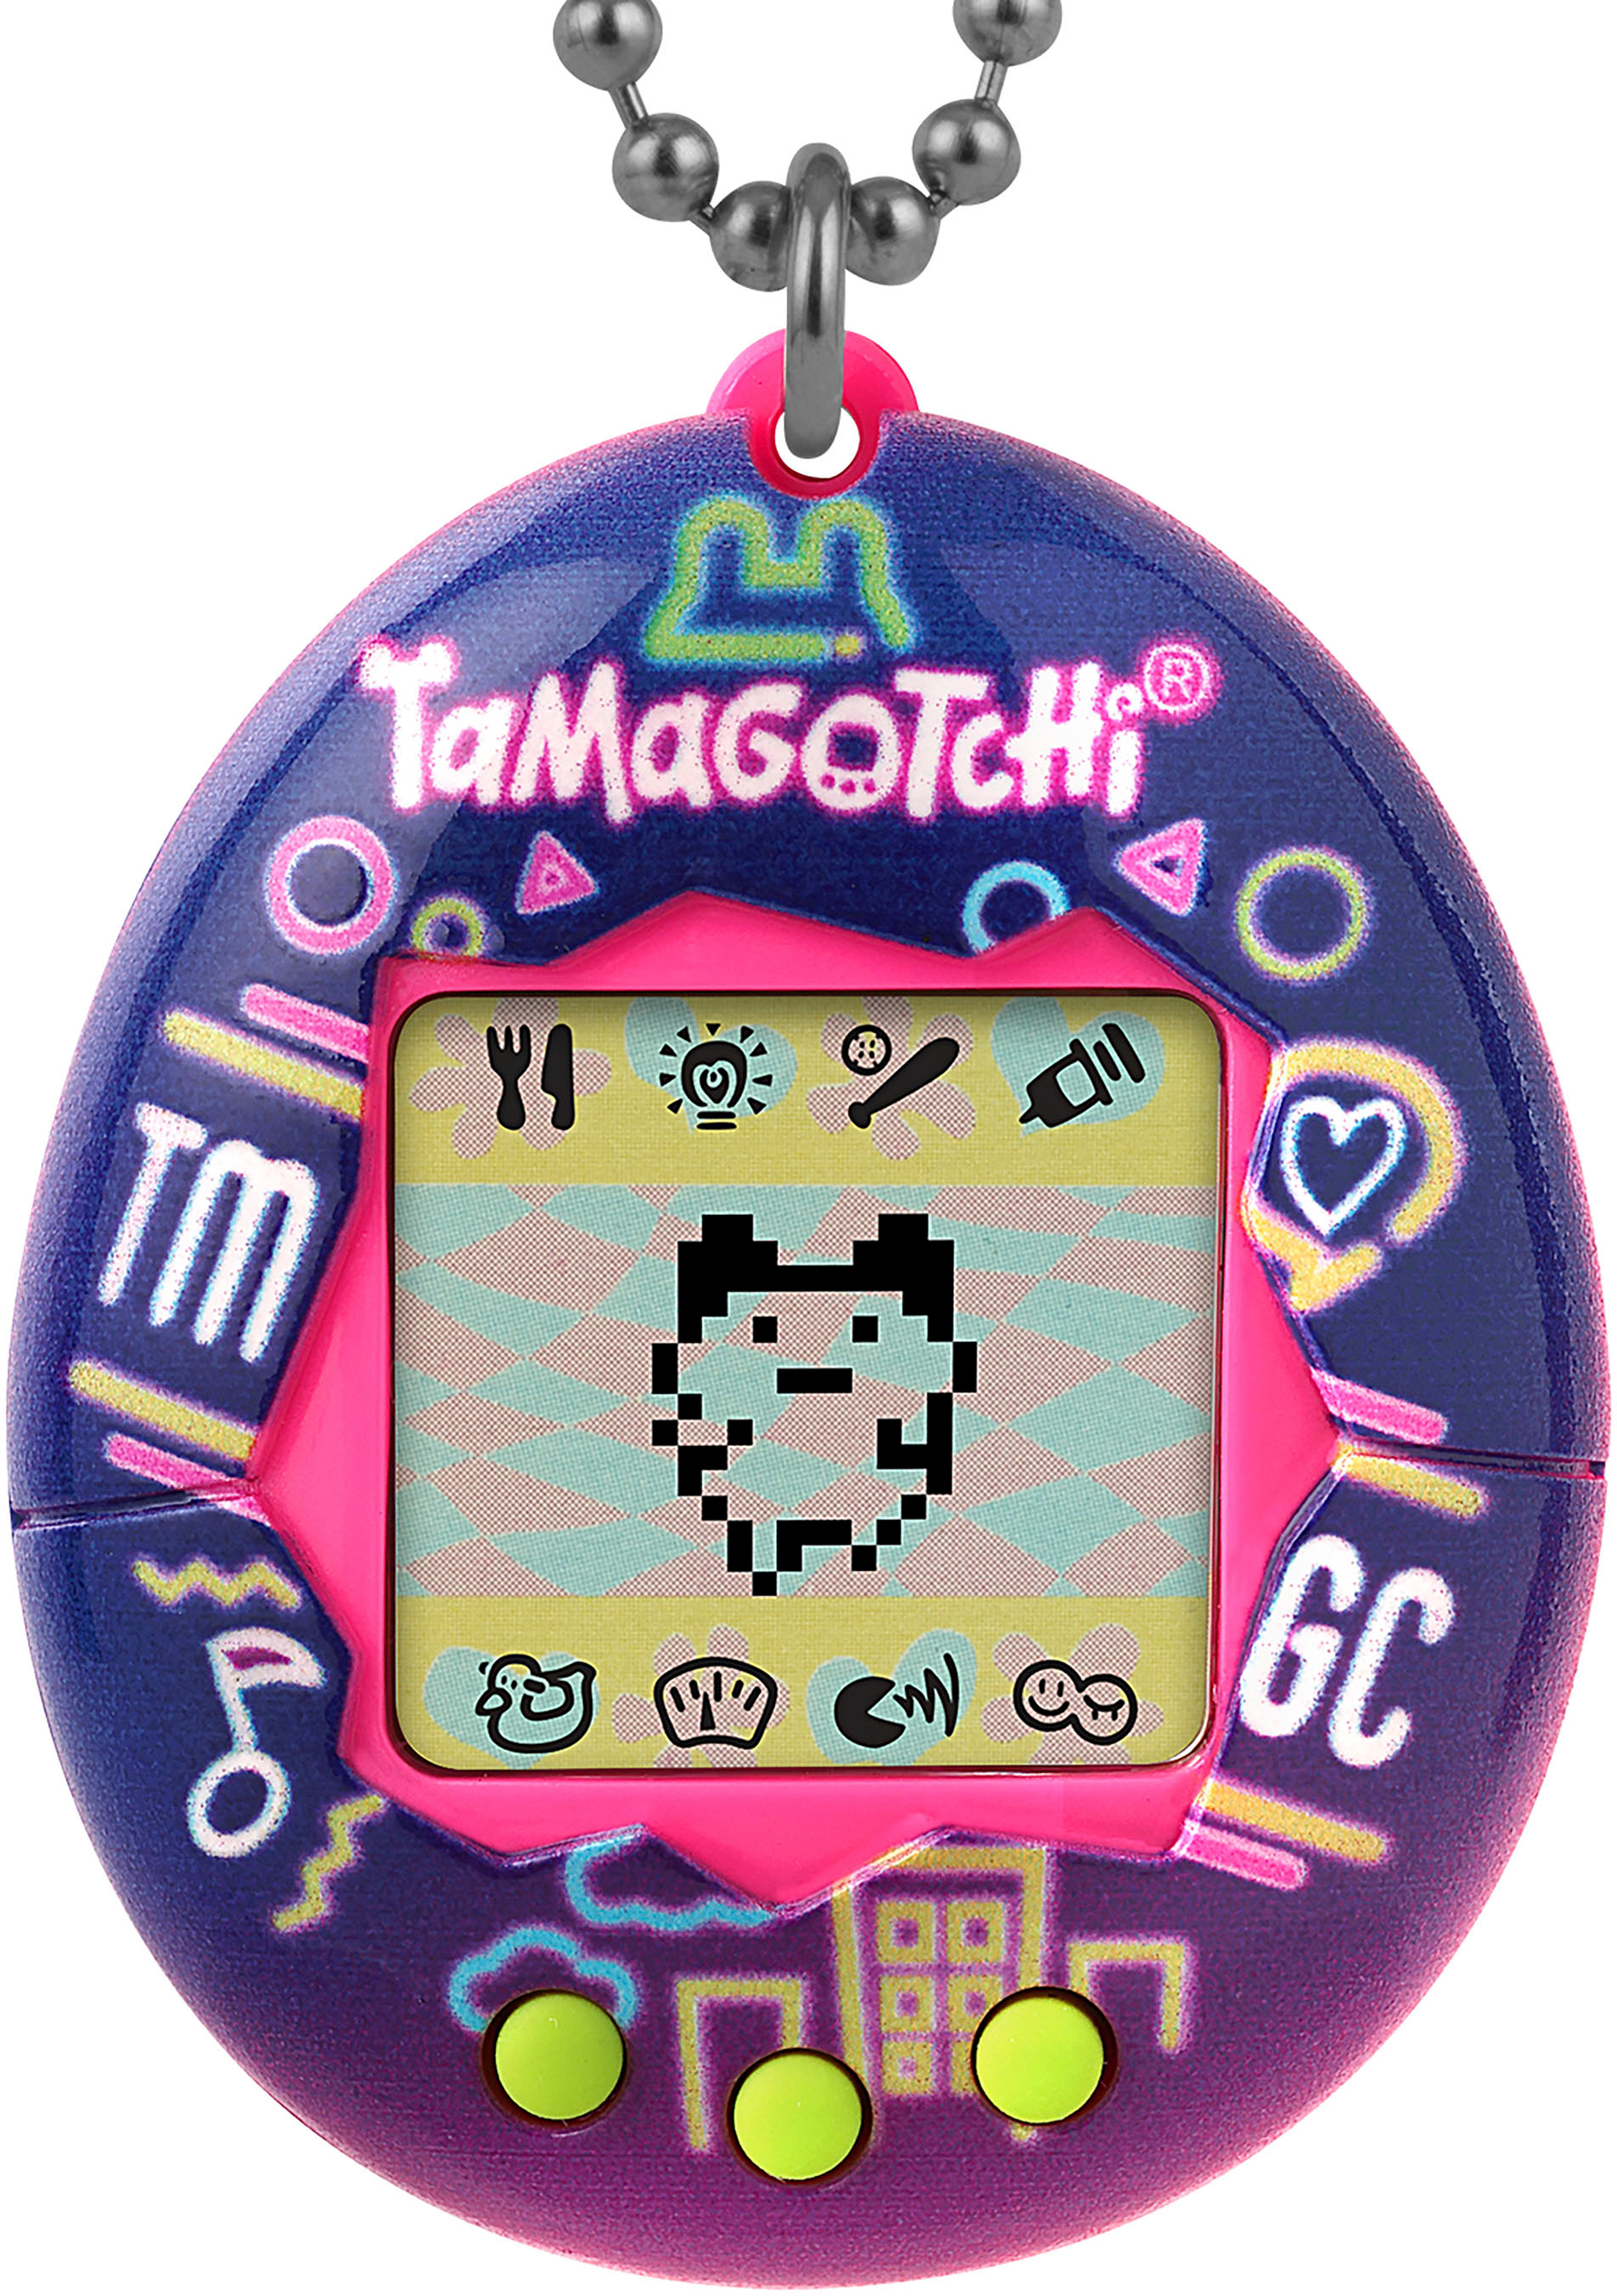 Tamagotchi: Original Tamagotchi - Starry Shower